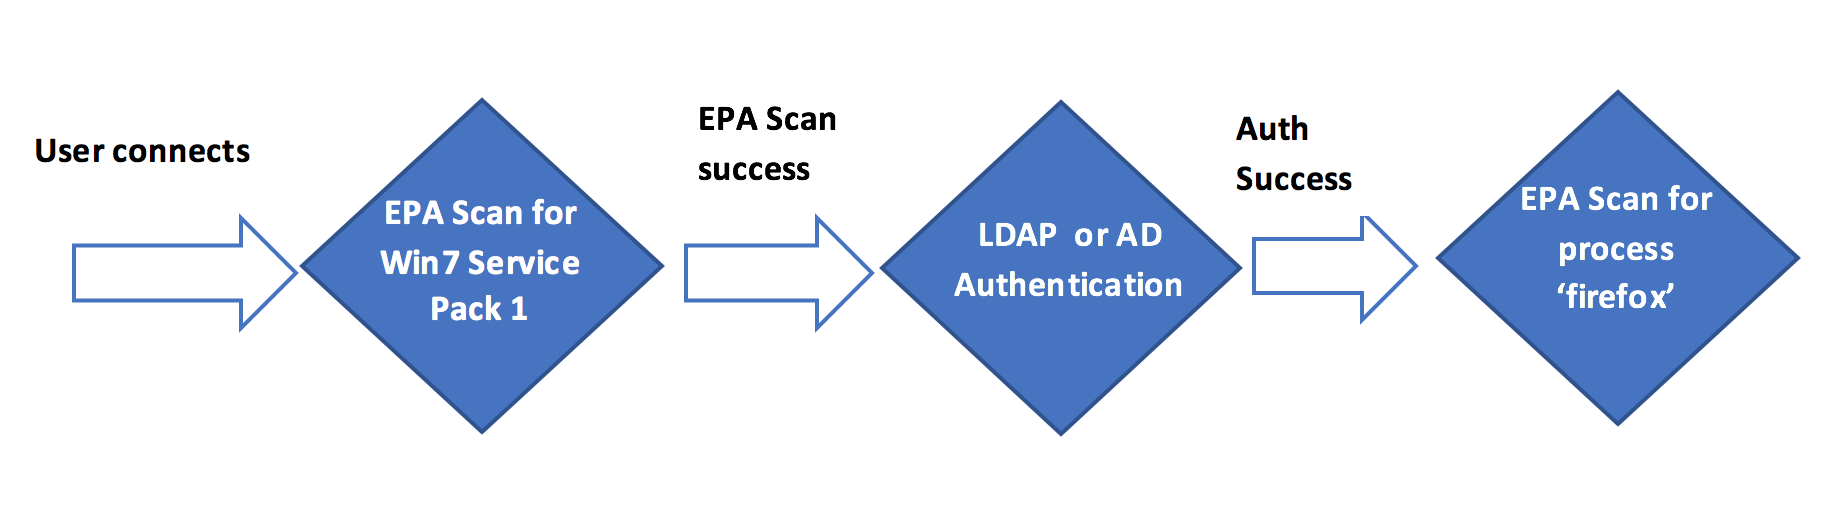 Darstellung des EPA-Scans, der als erste Überprüfung in nFactor- oder Multifaktor-Authentifizierung verwendet wird